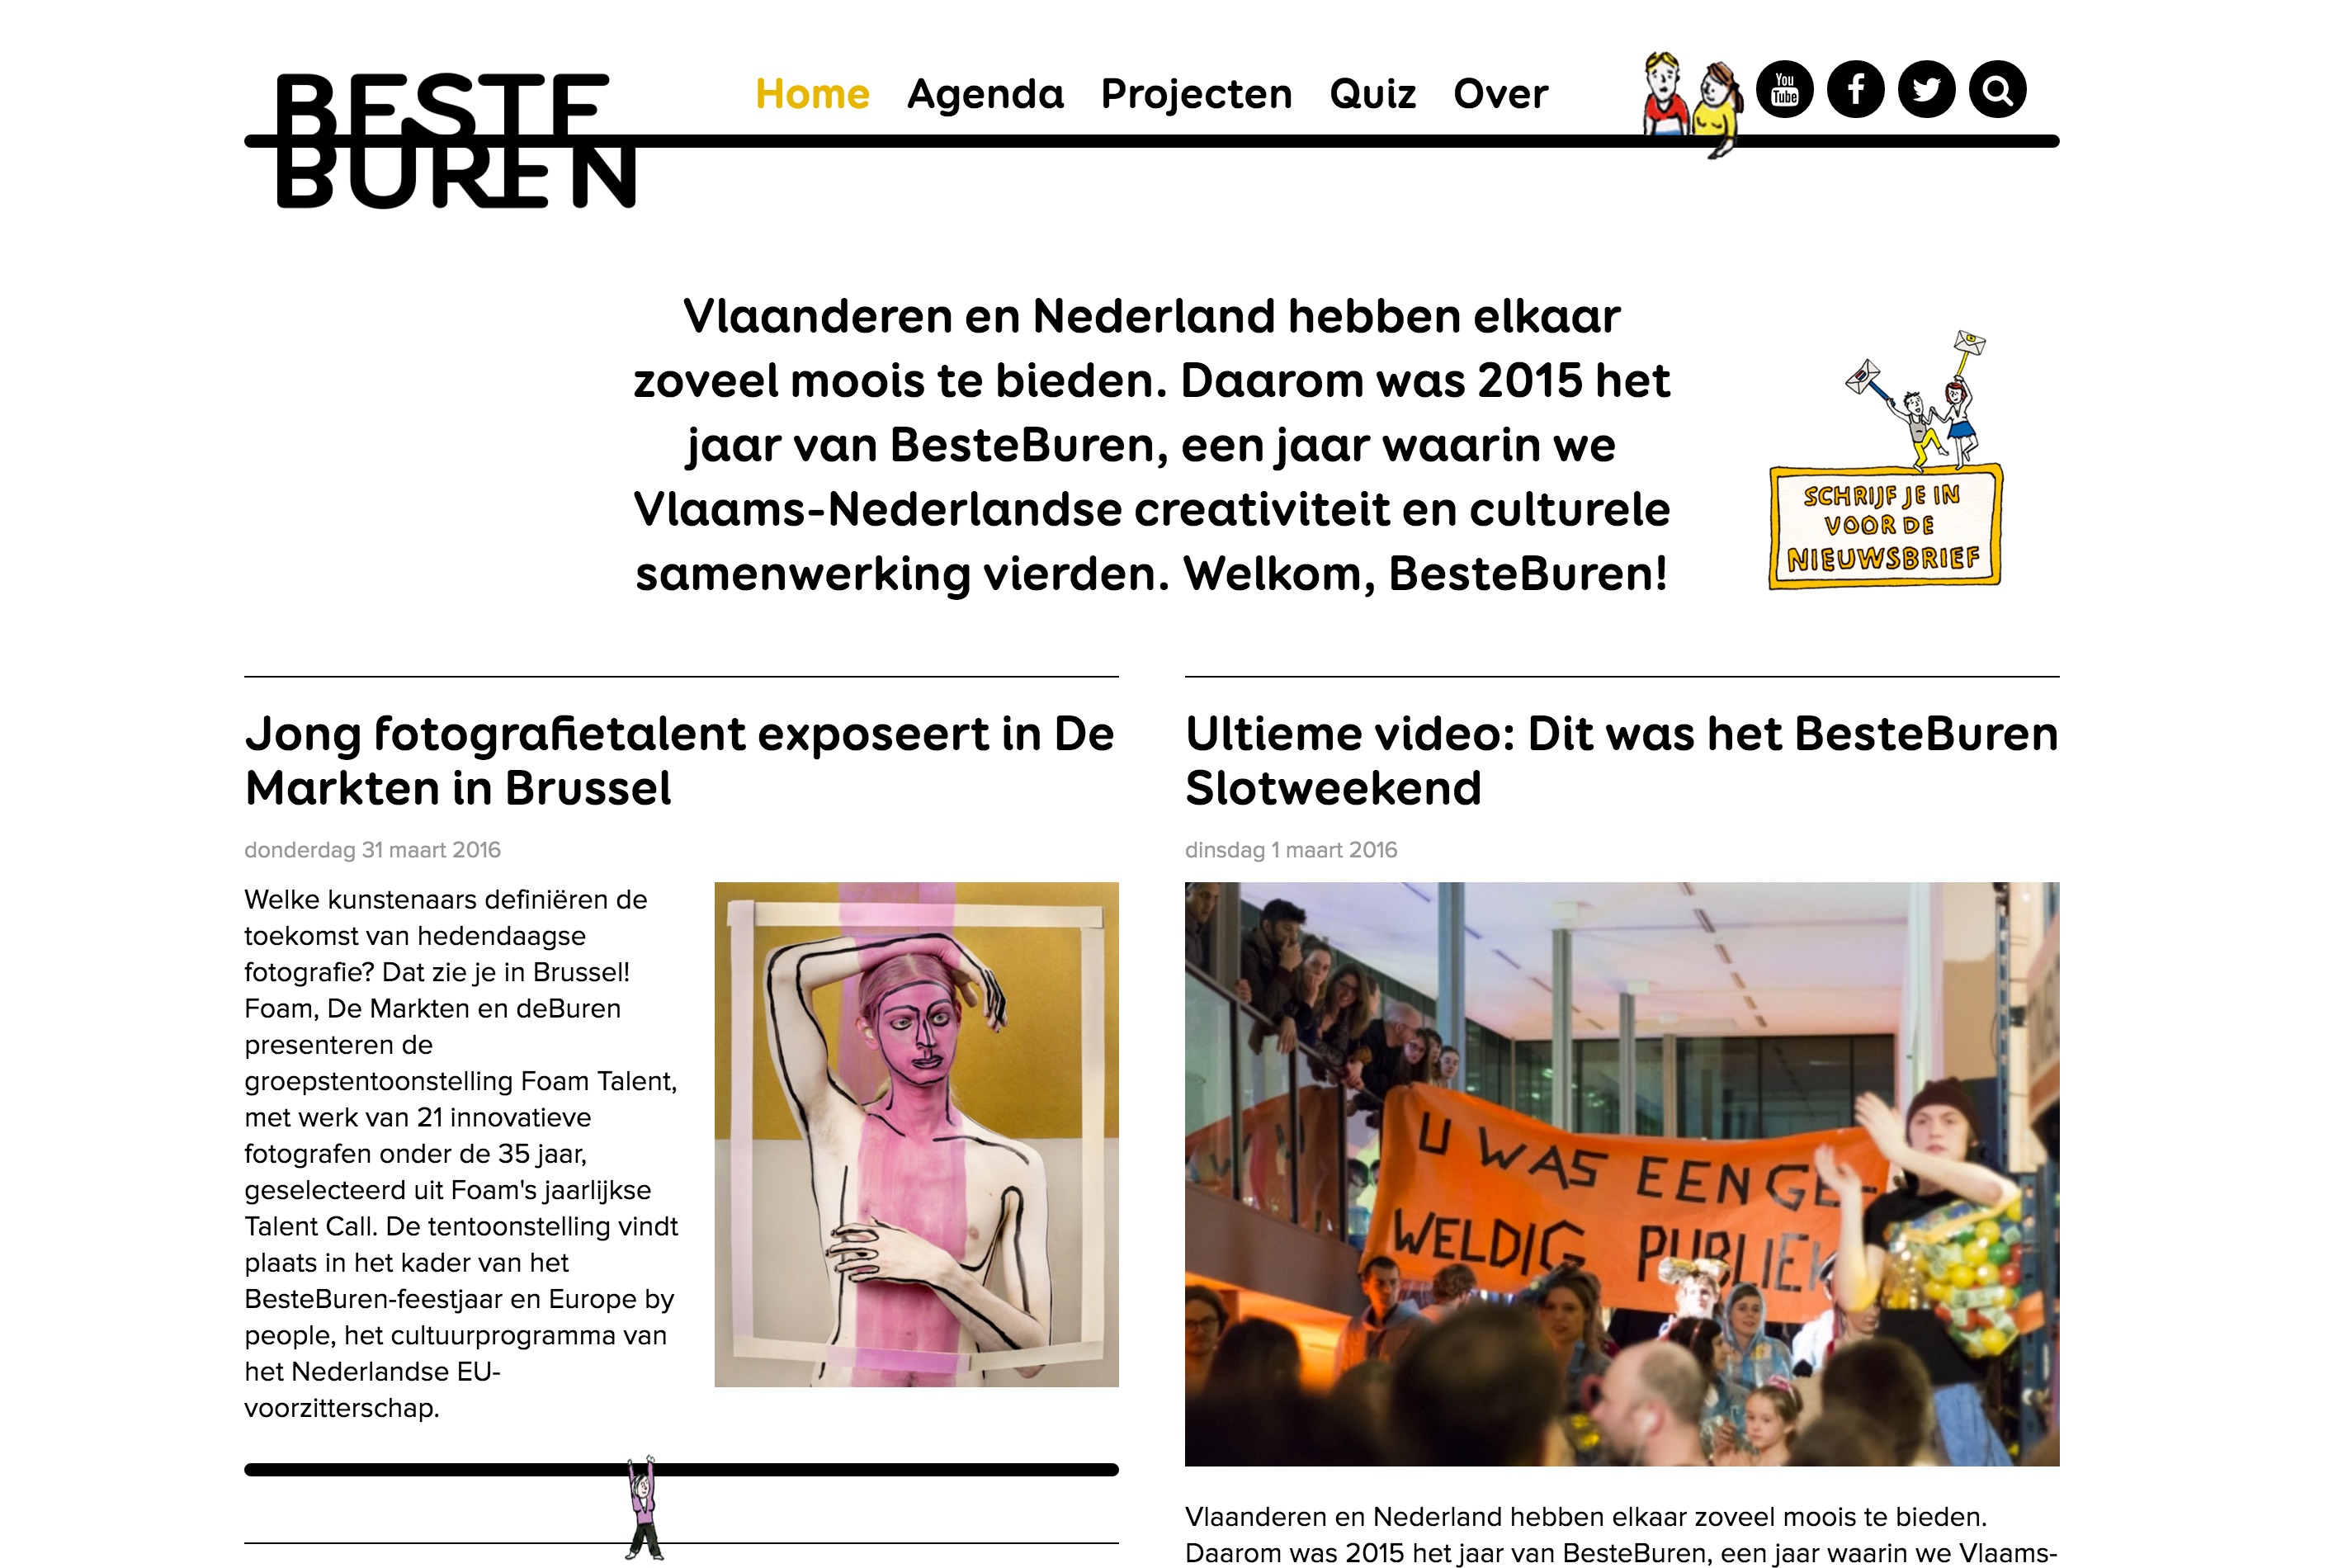 BesteBuren website, desktop version.